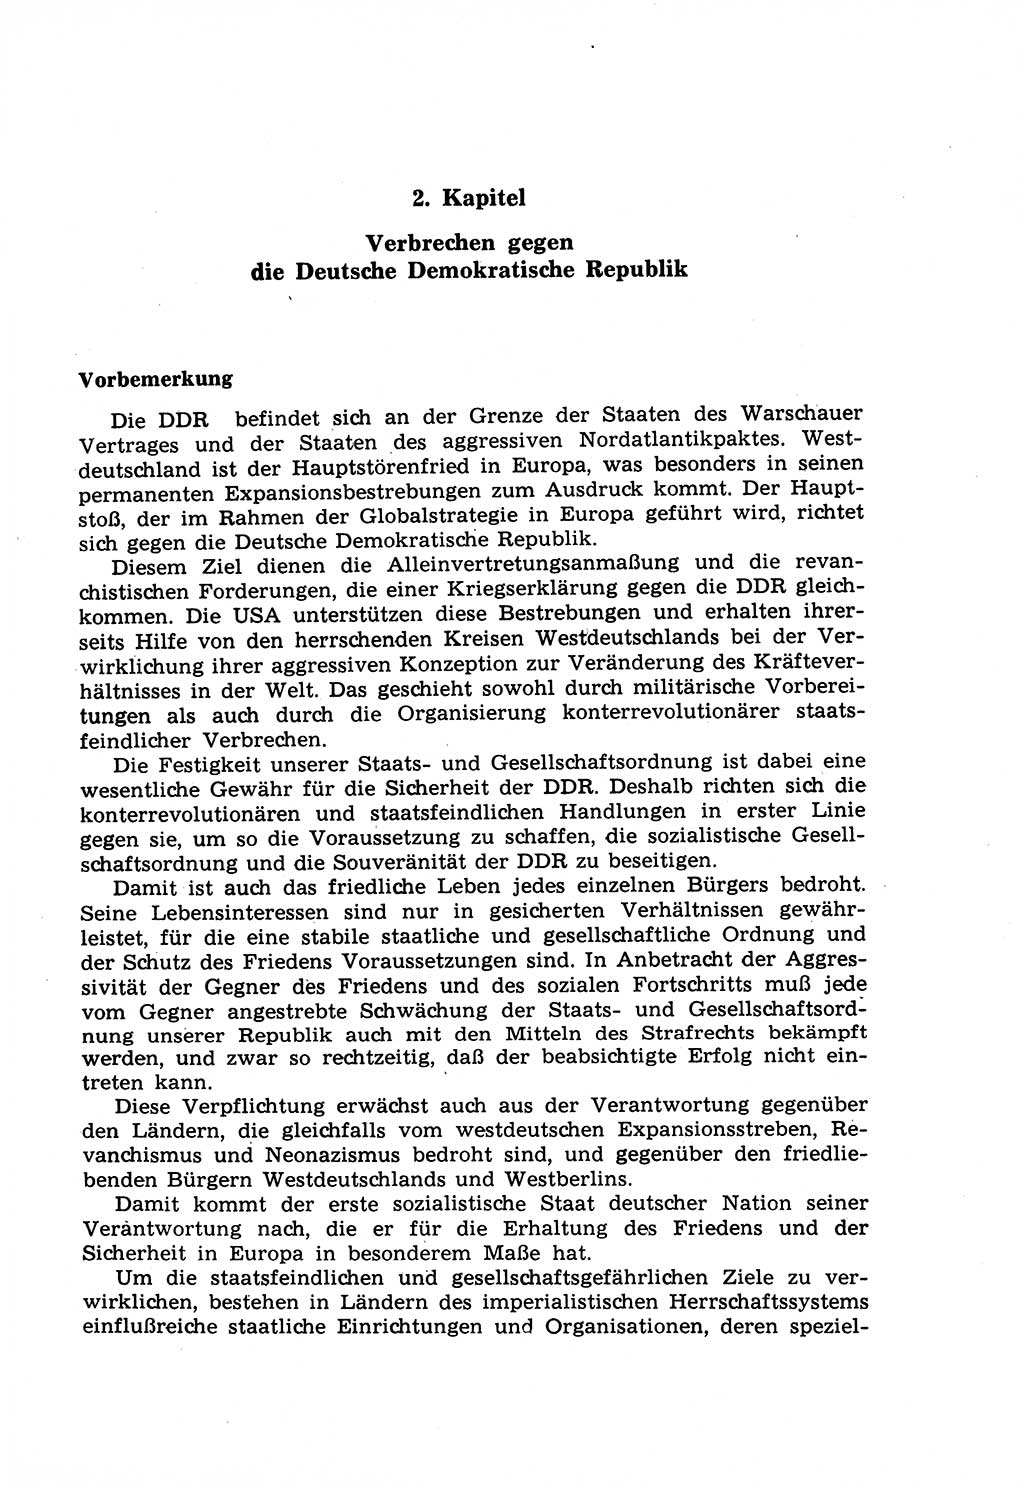 Strafrecht der Deutschen Demokratischen Republik (DDR), Lehrkommentar zum Strafgesetzbuch (StGB), Besonderer Teil 1970, Seite 43 (Strafr. DDR Lehrkomm. StGB BT 1970, S. 43)